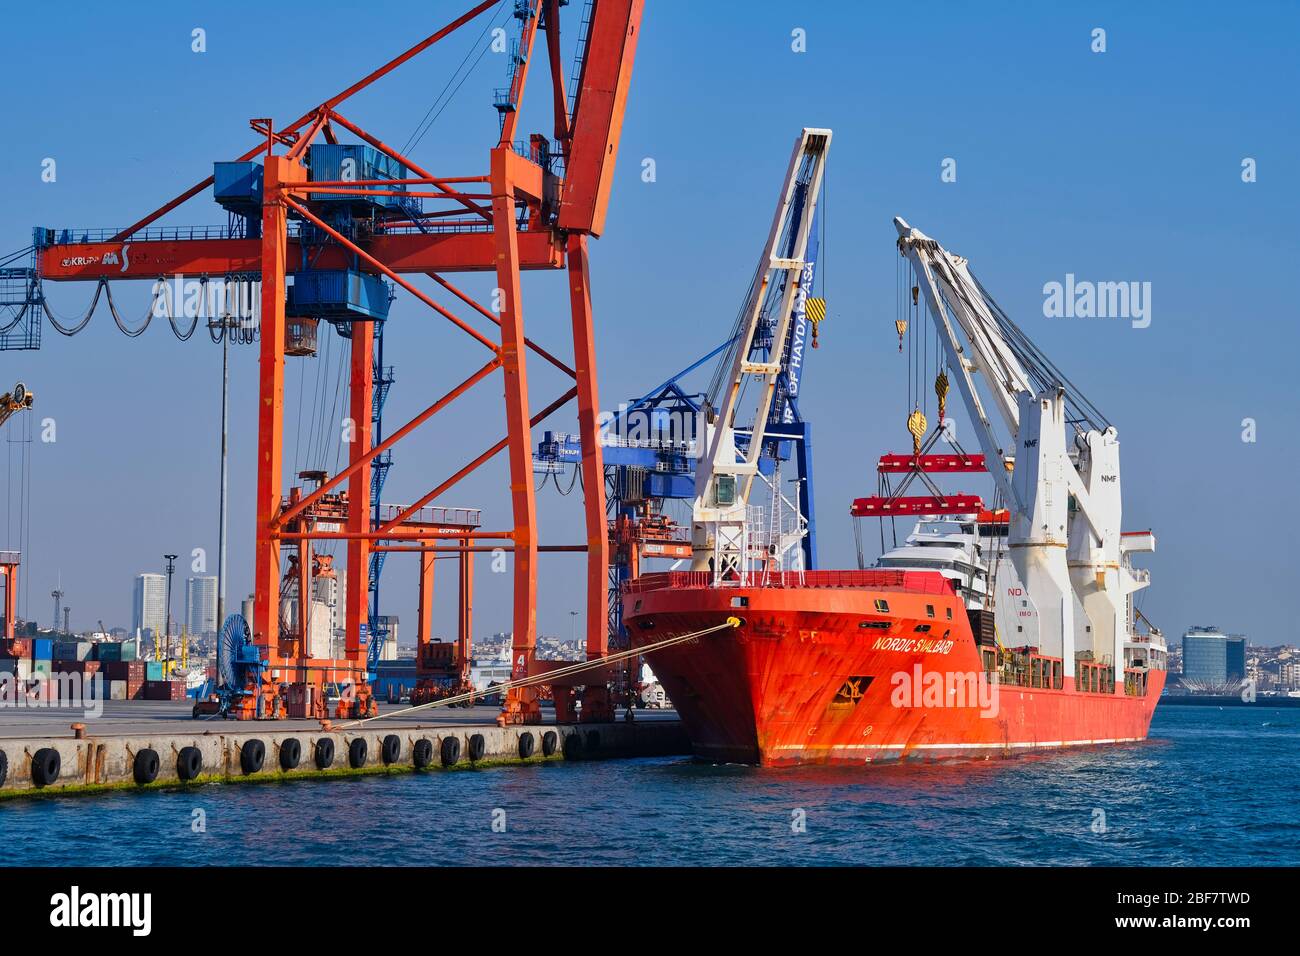 İstanbul Haydarpaşa Puerto Internacional. Donde los buques de carga descargan su carga Foto de stock